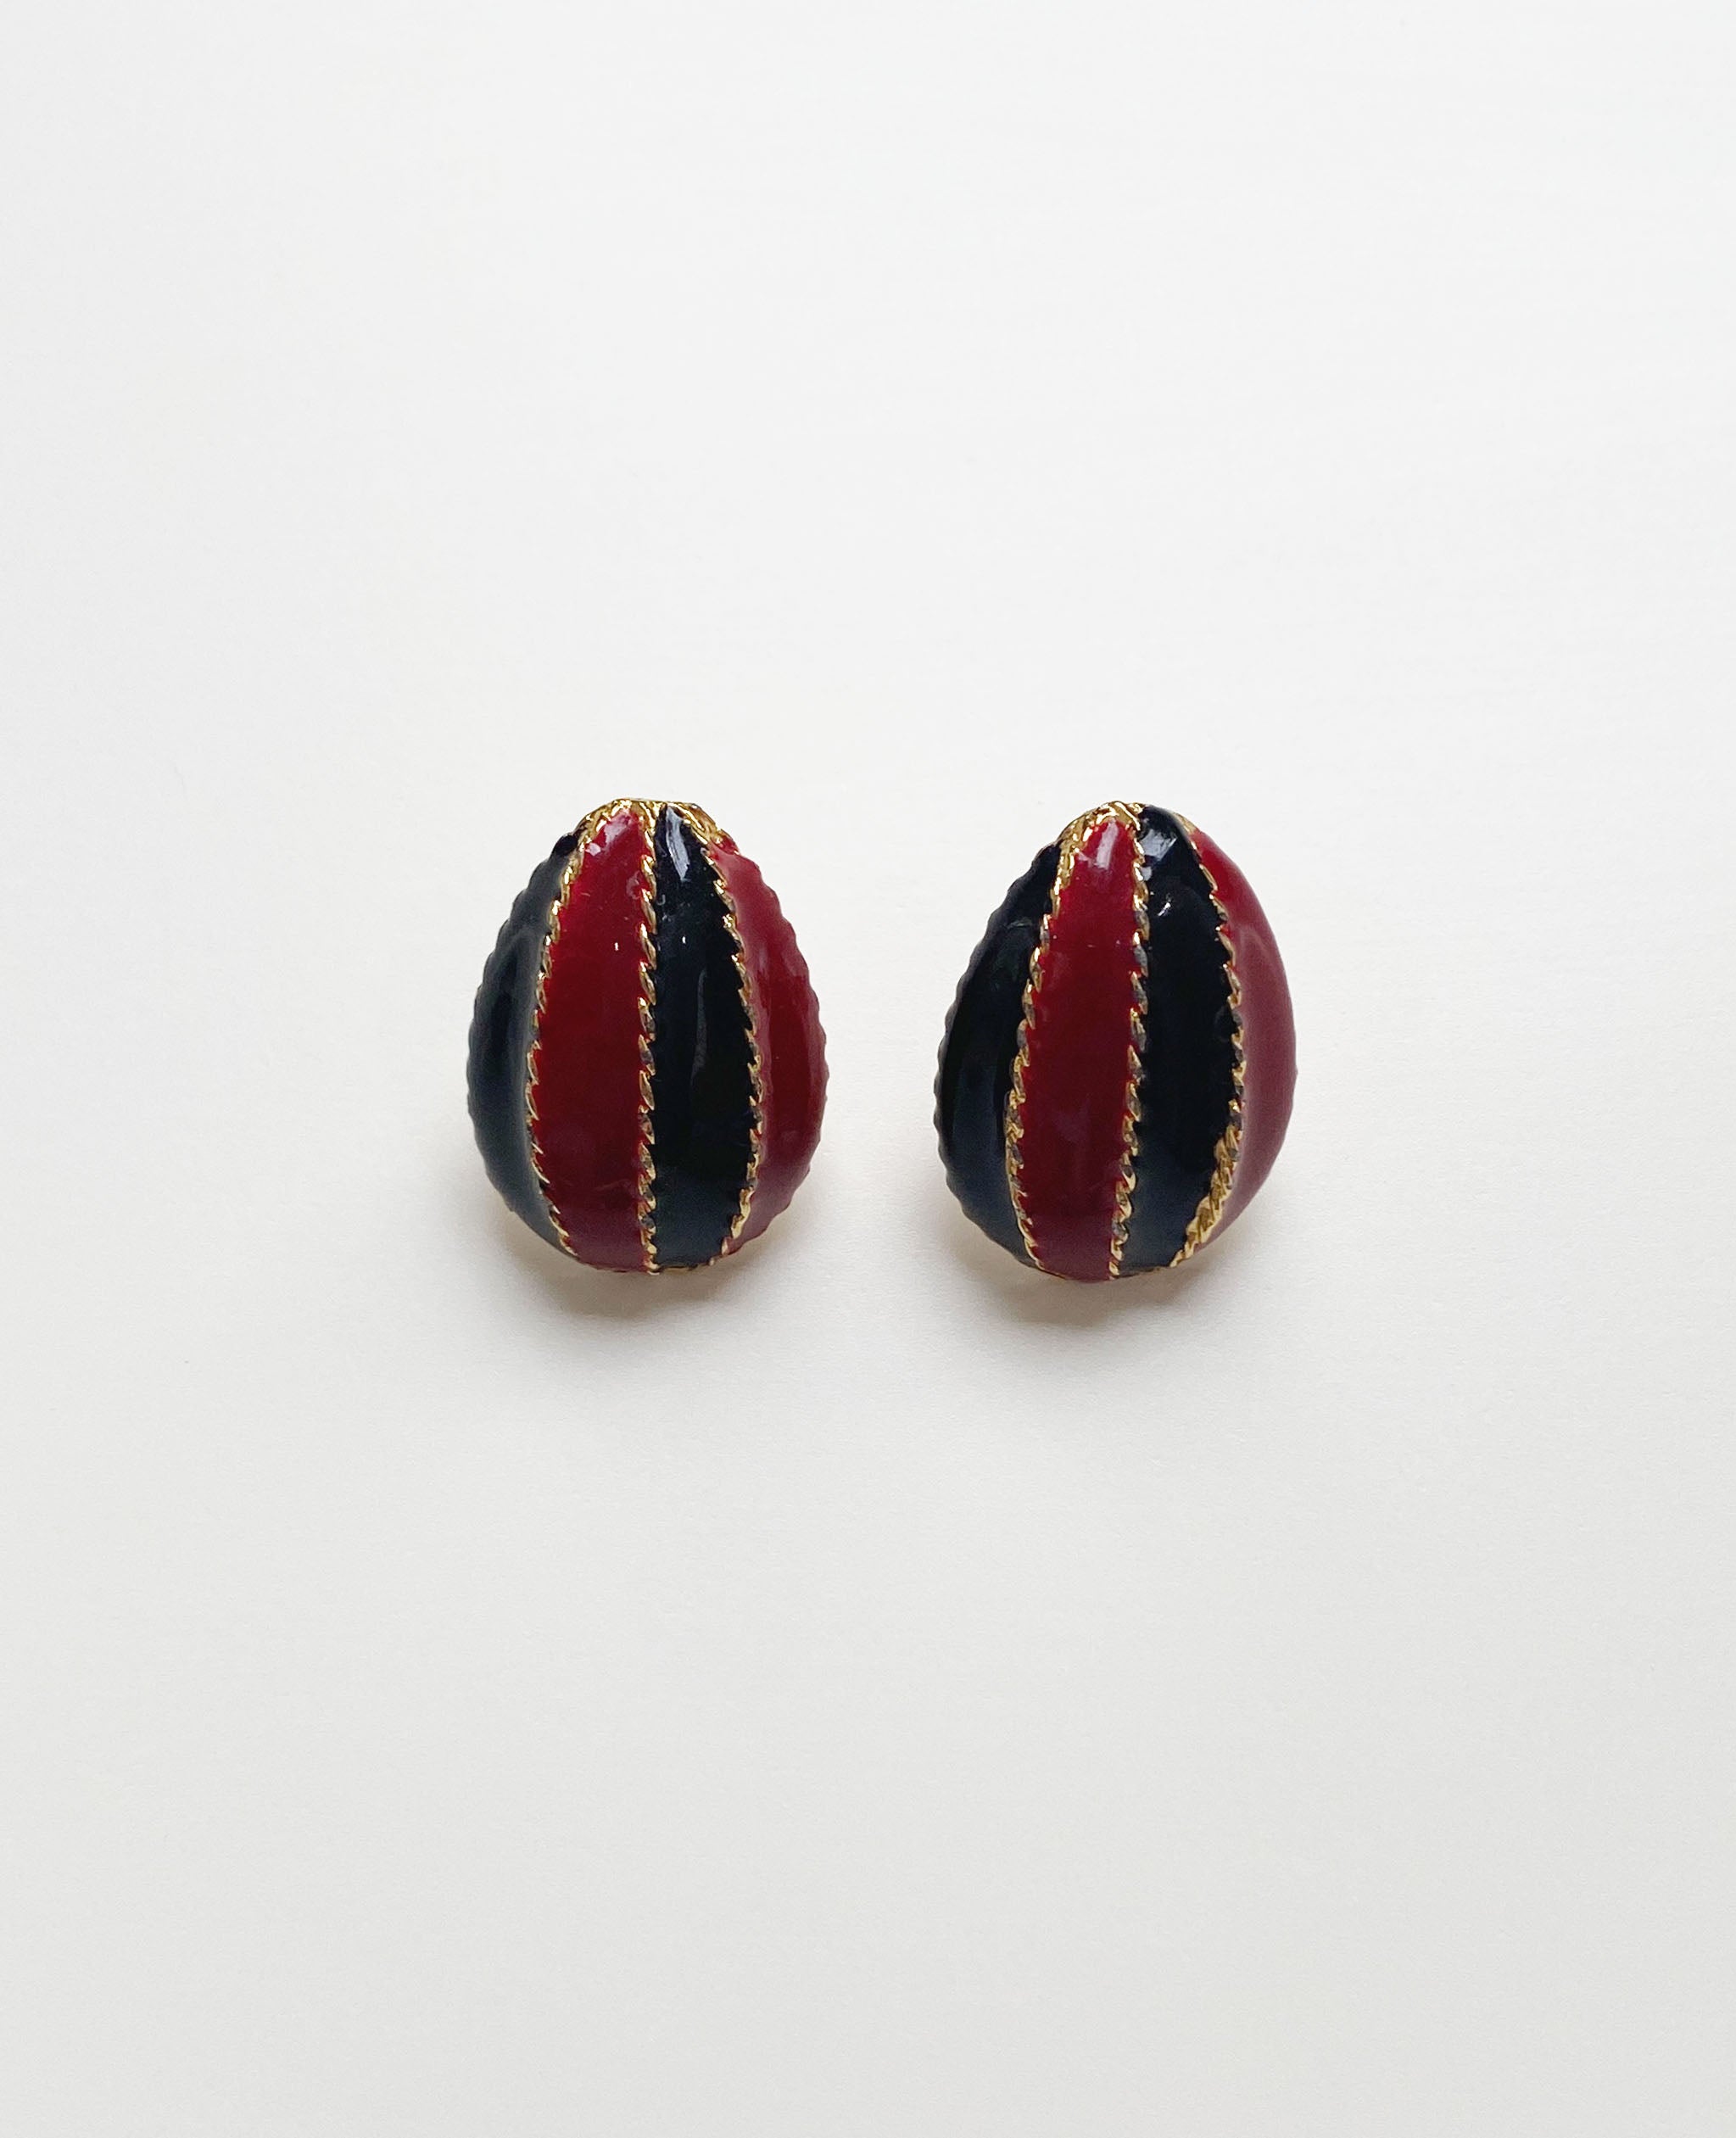 Red and Black Enamel Earrings